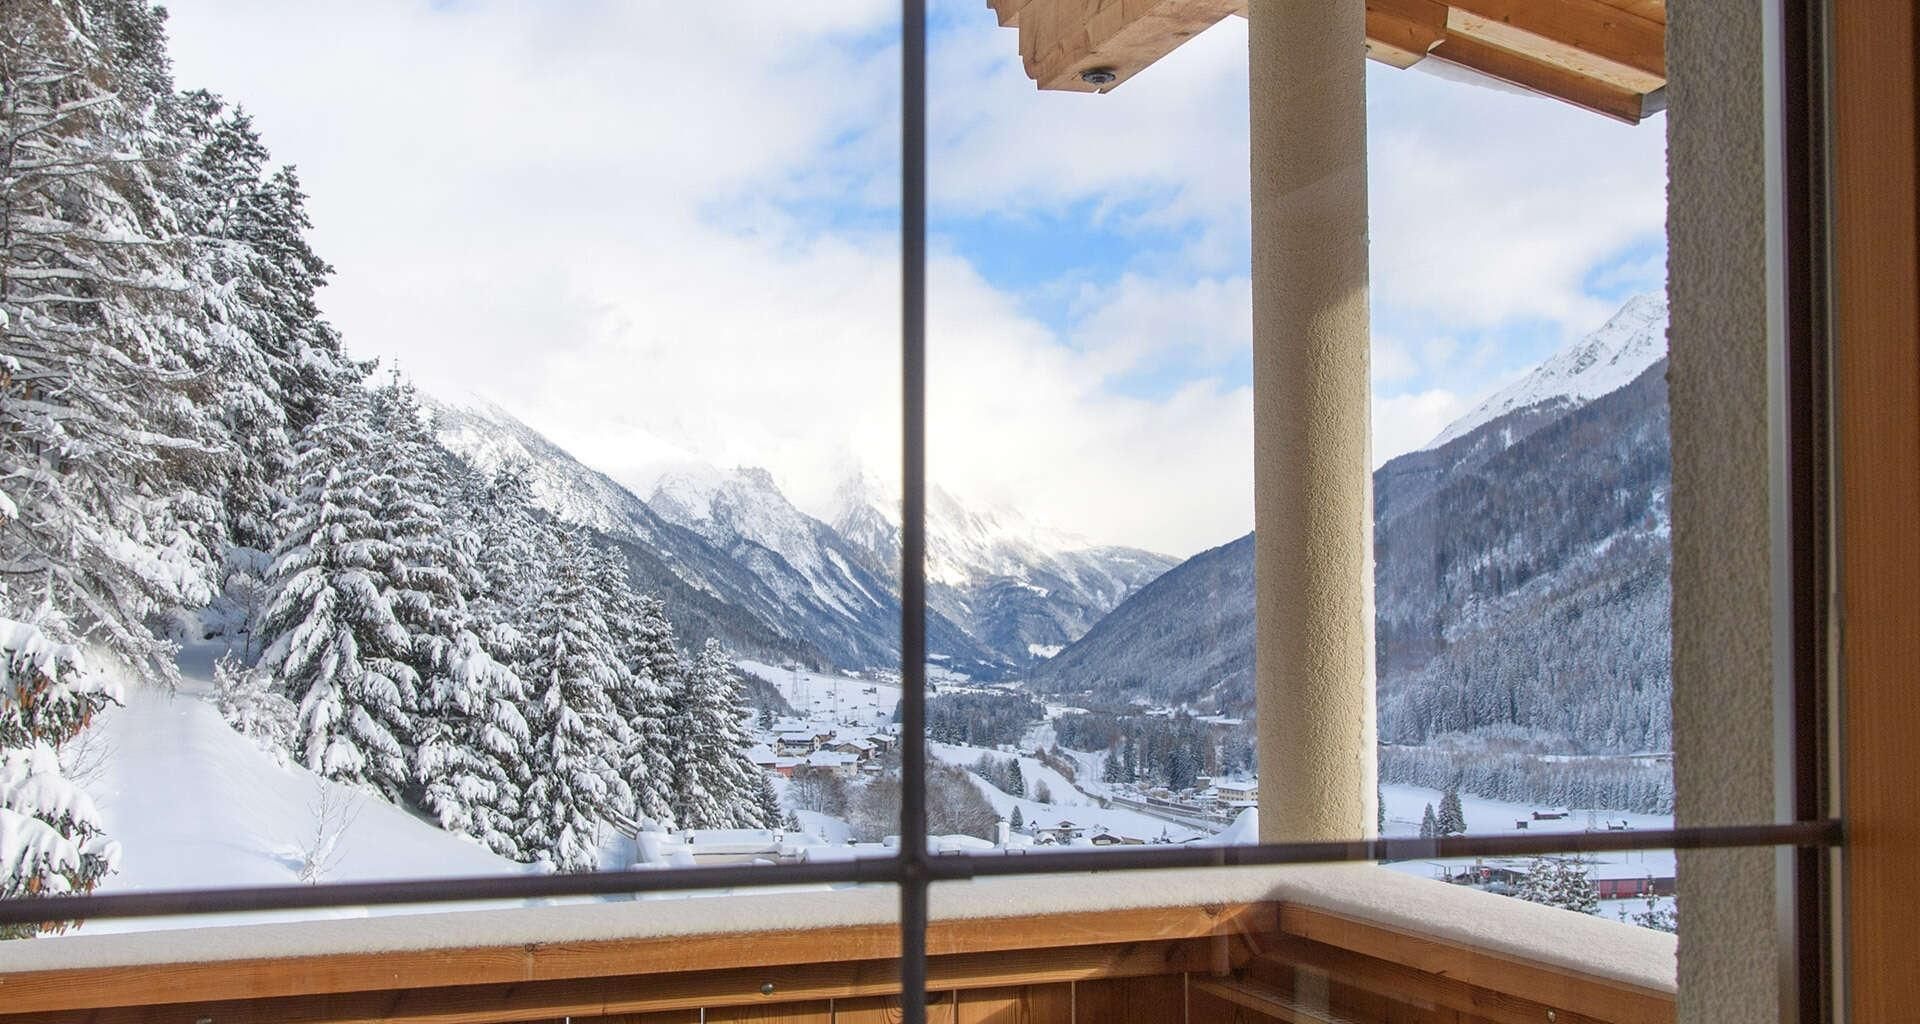 View in winter from Hotel Bacherhof in St Anton am Arlberg